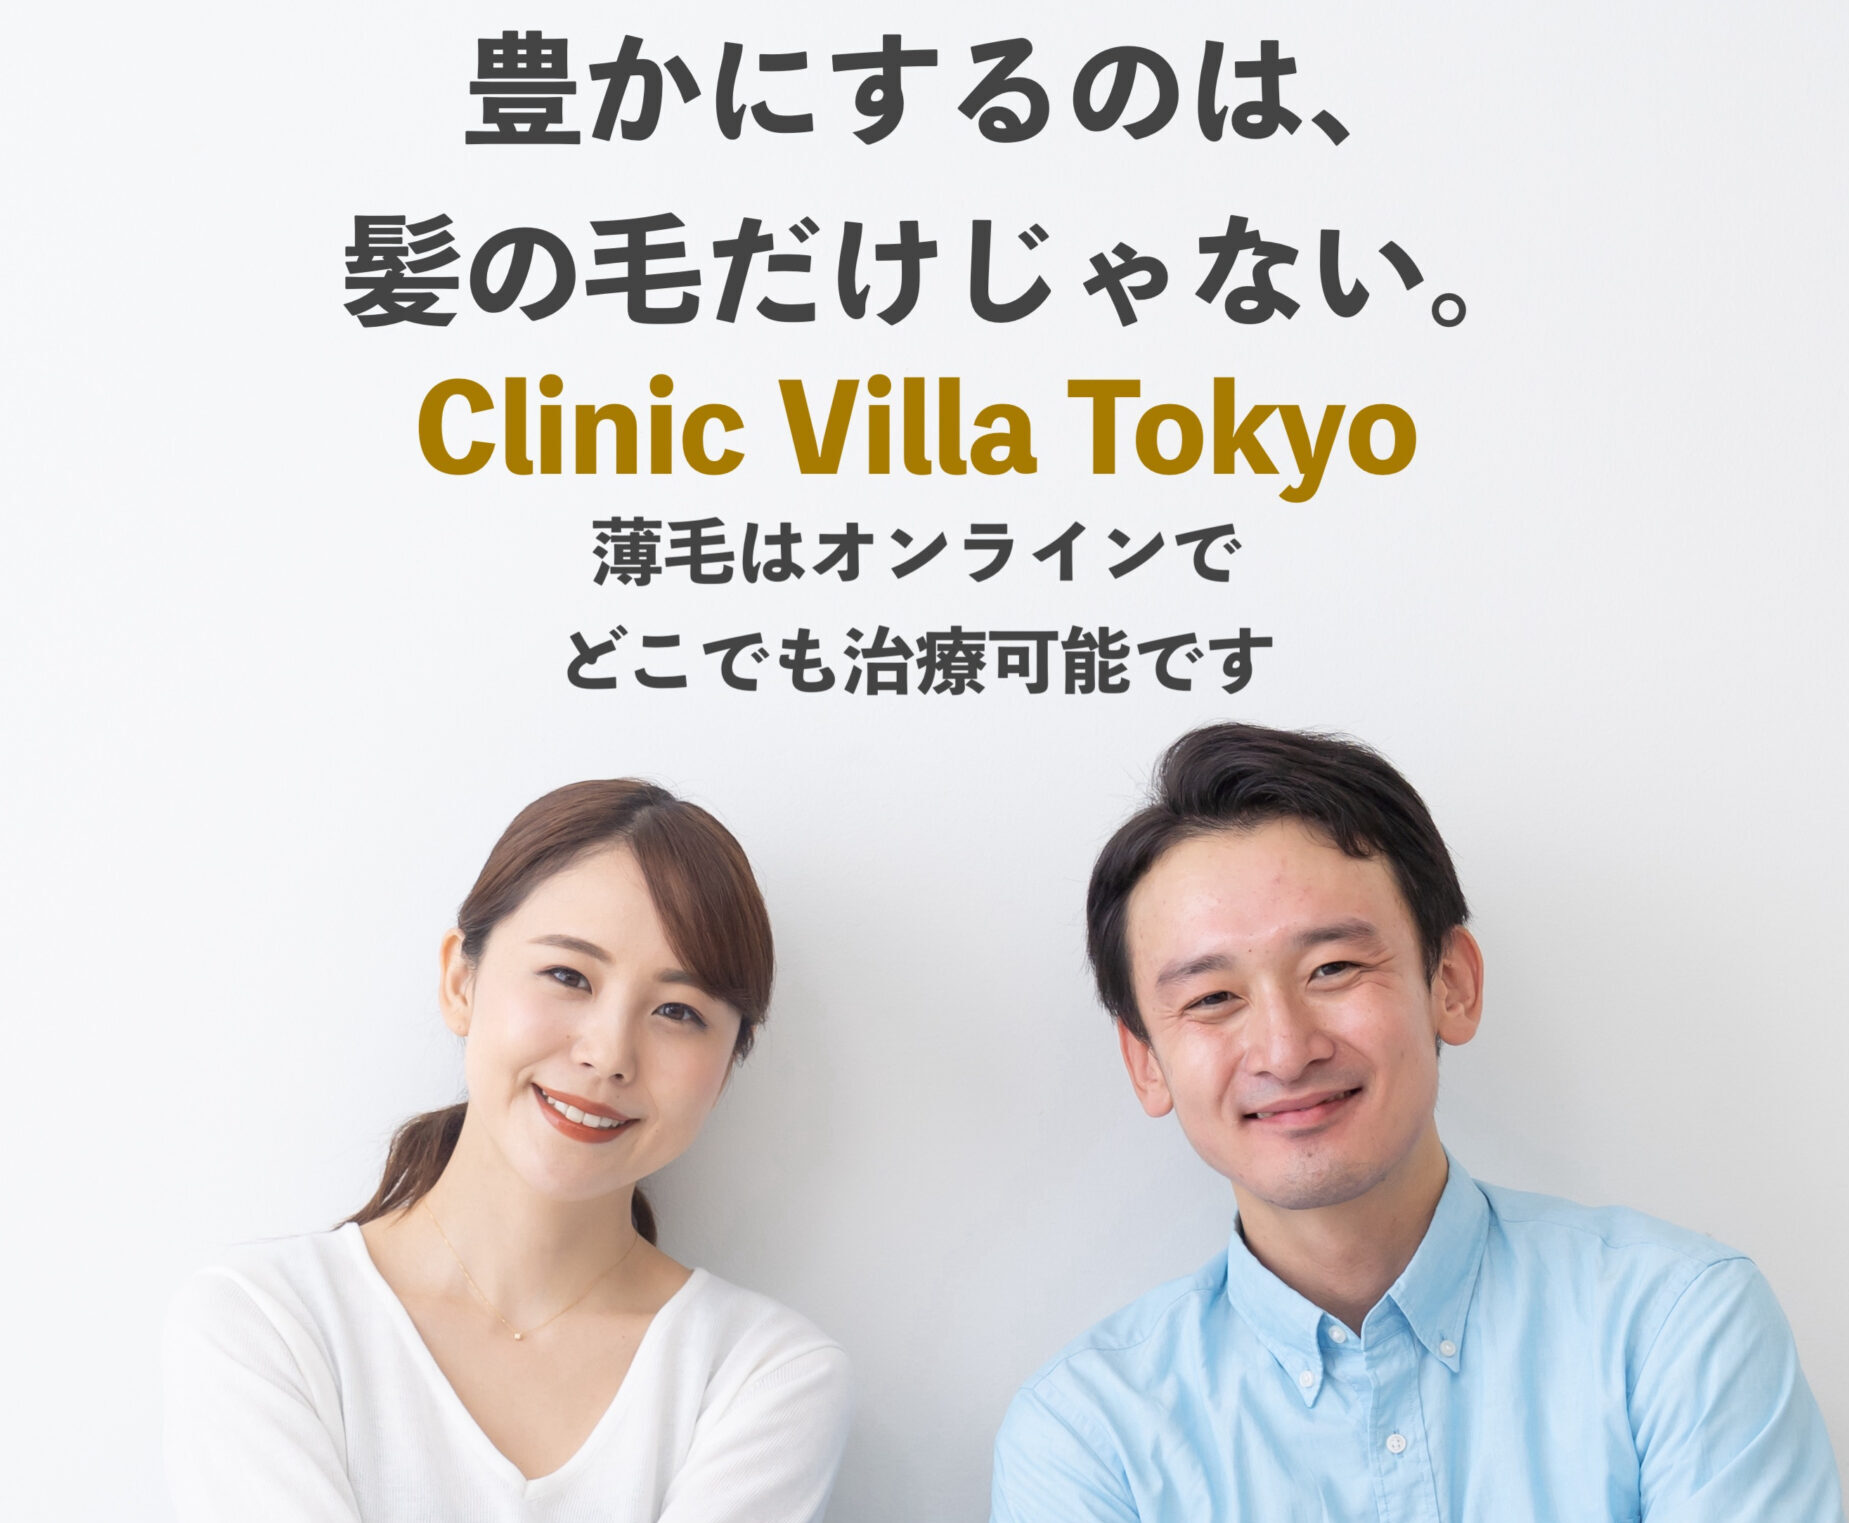 Clinic Villa Tokyo